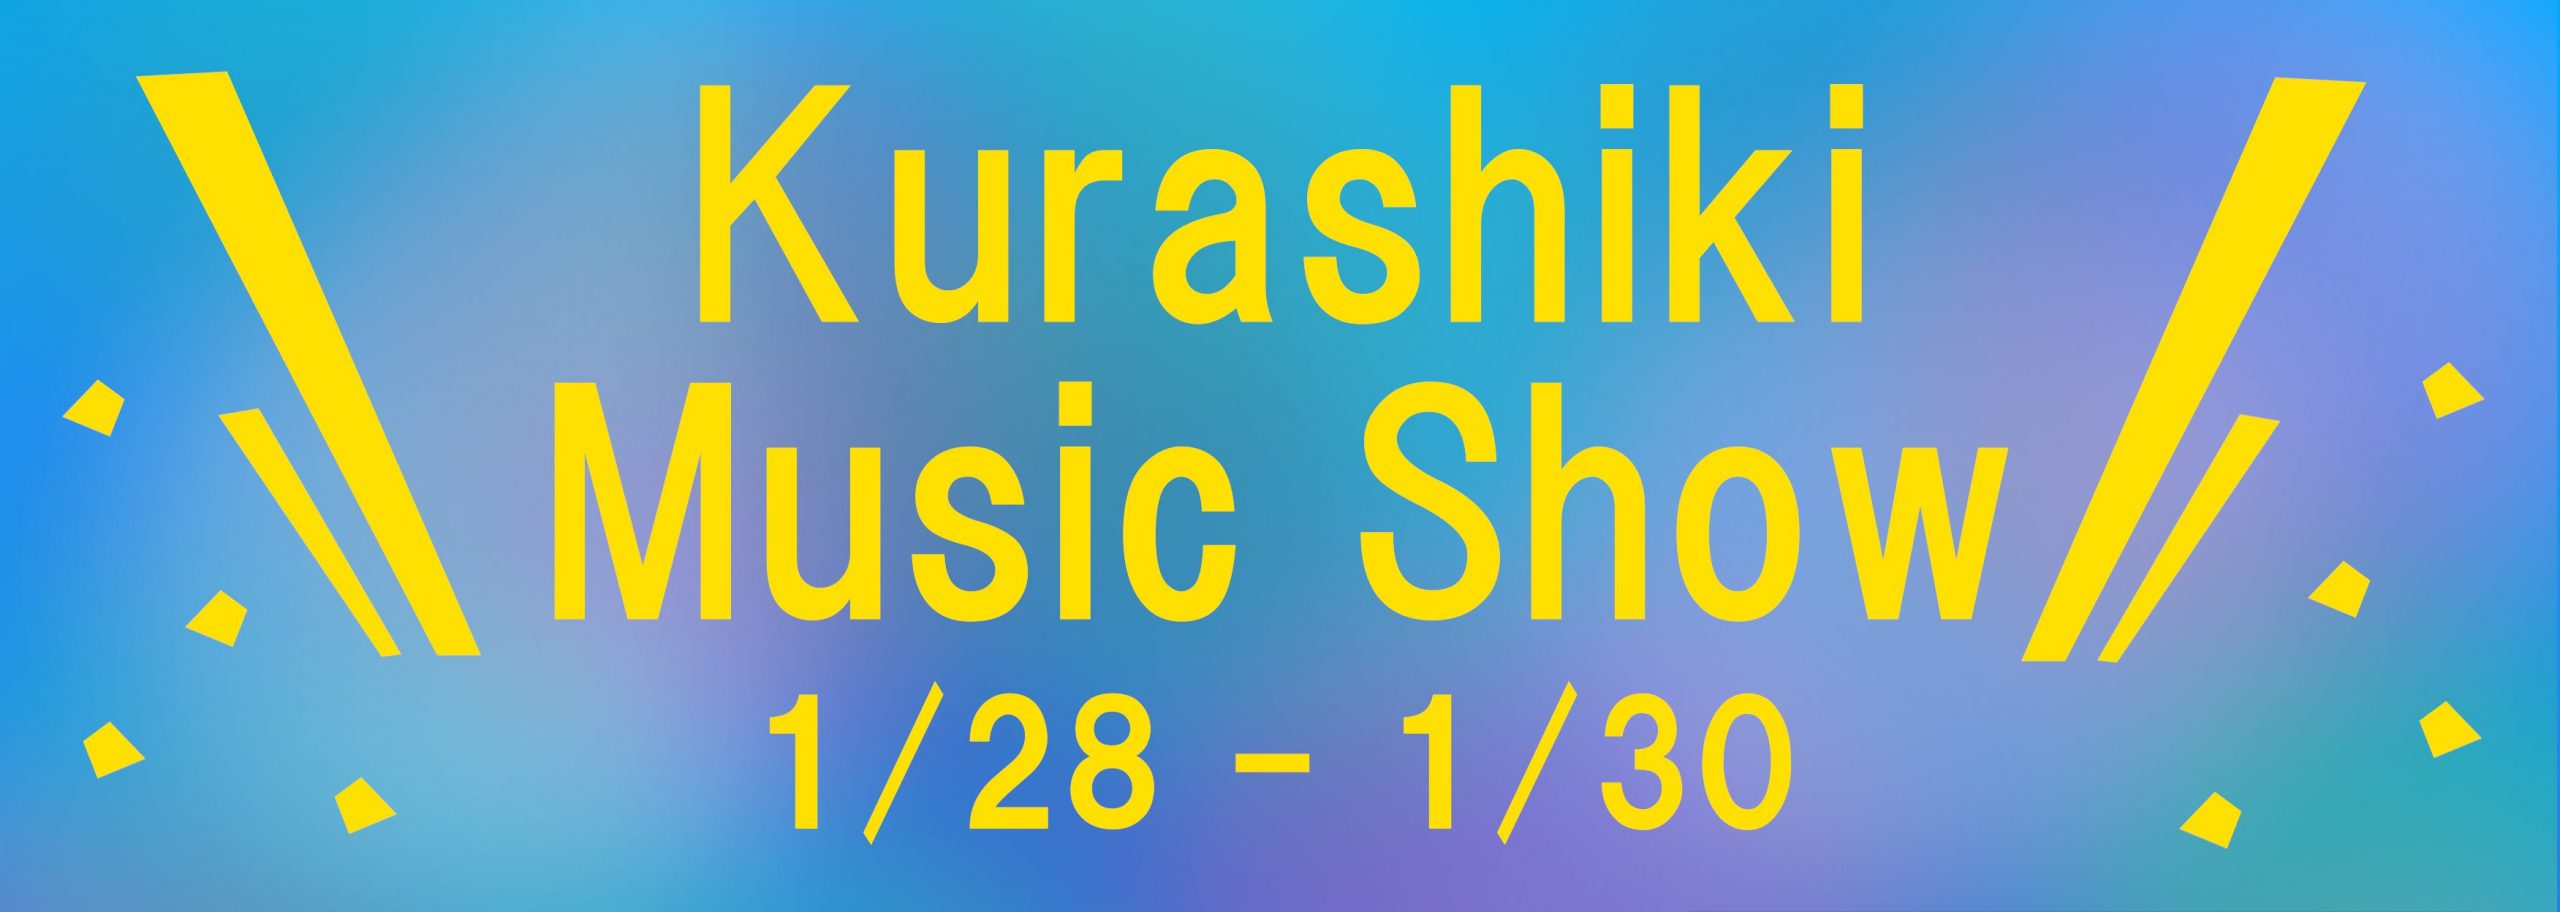 【ピアノ・ギター・管楽器】Kurashiki Music Show 2022 1/28〜1/30